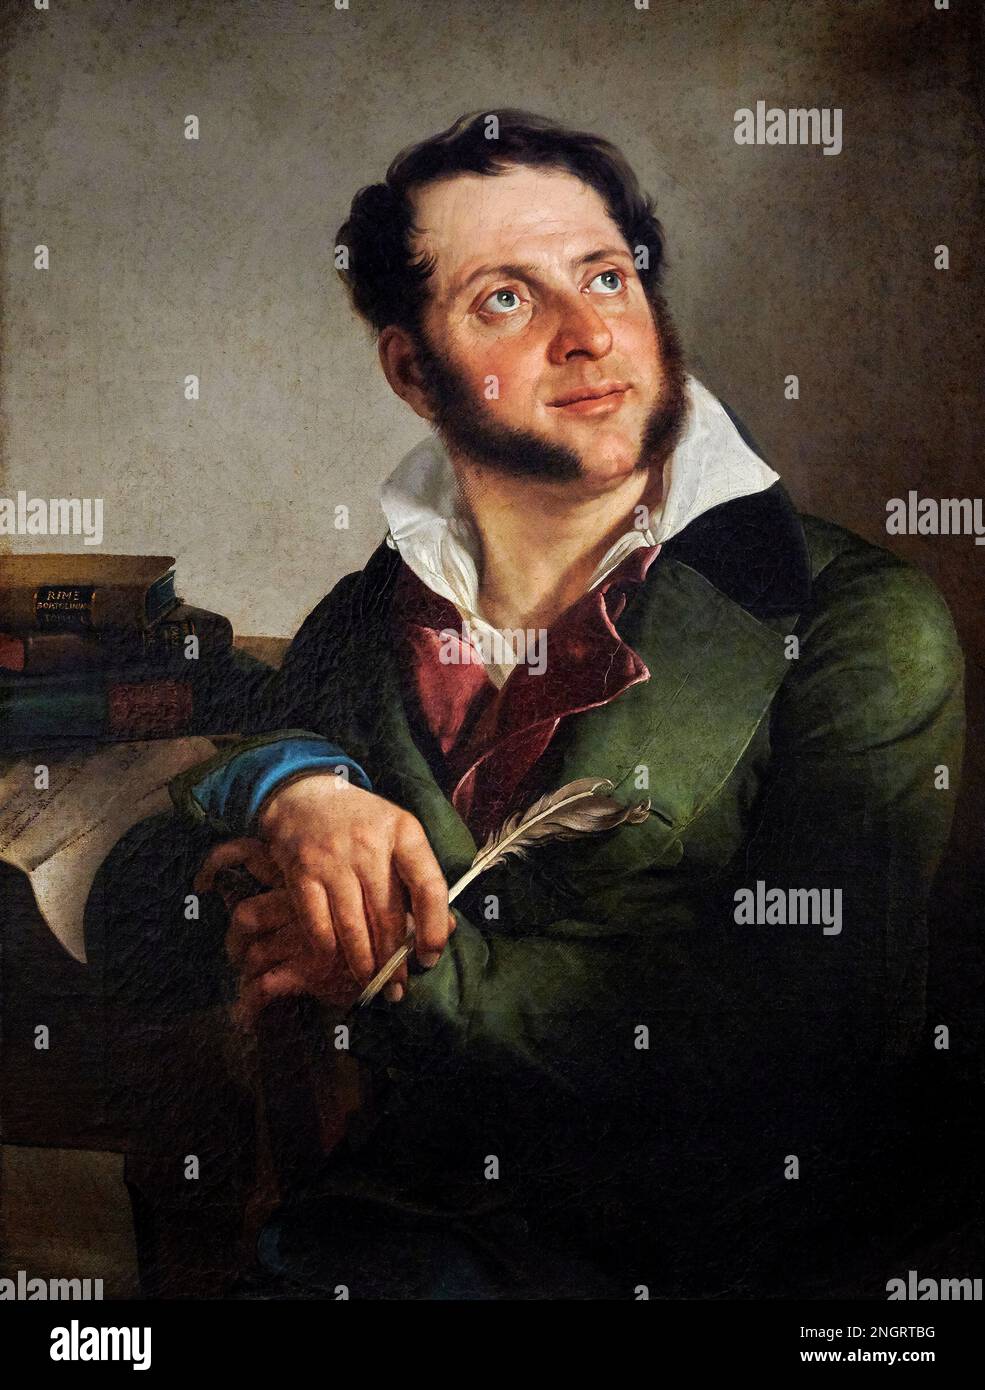 Ritratto del poeta Pietro Ruggeri da Stabello   - olio su tela  - Enrico Scuri  - 1838  - Bergamo, Accademia Carrara Stock Photo